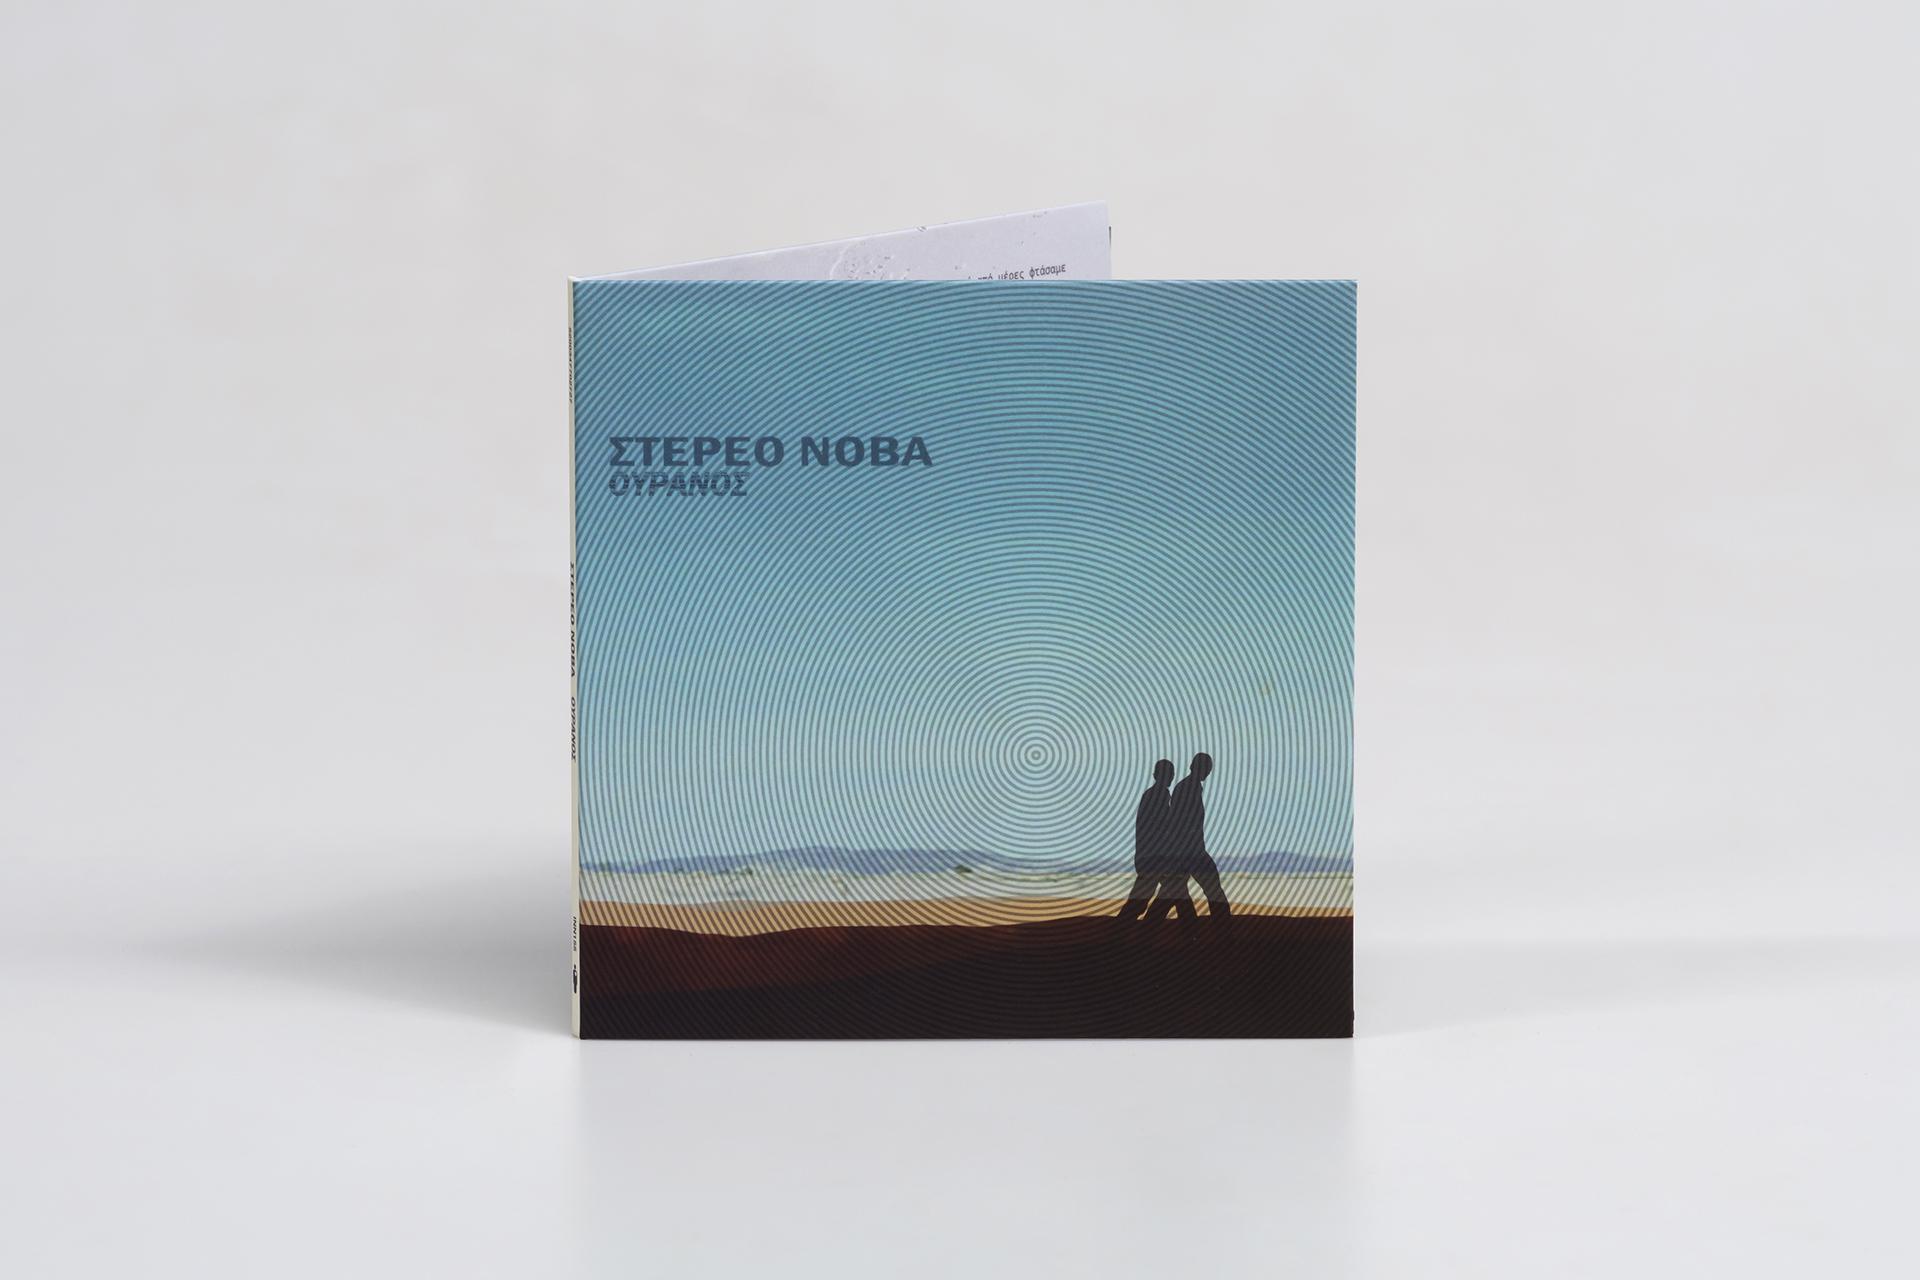 Stereo Nova - Ouranos special edition CD cover